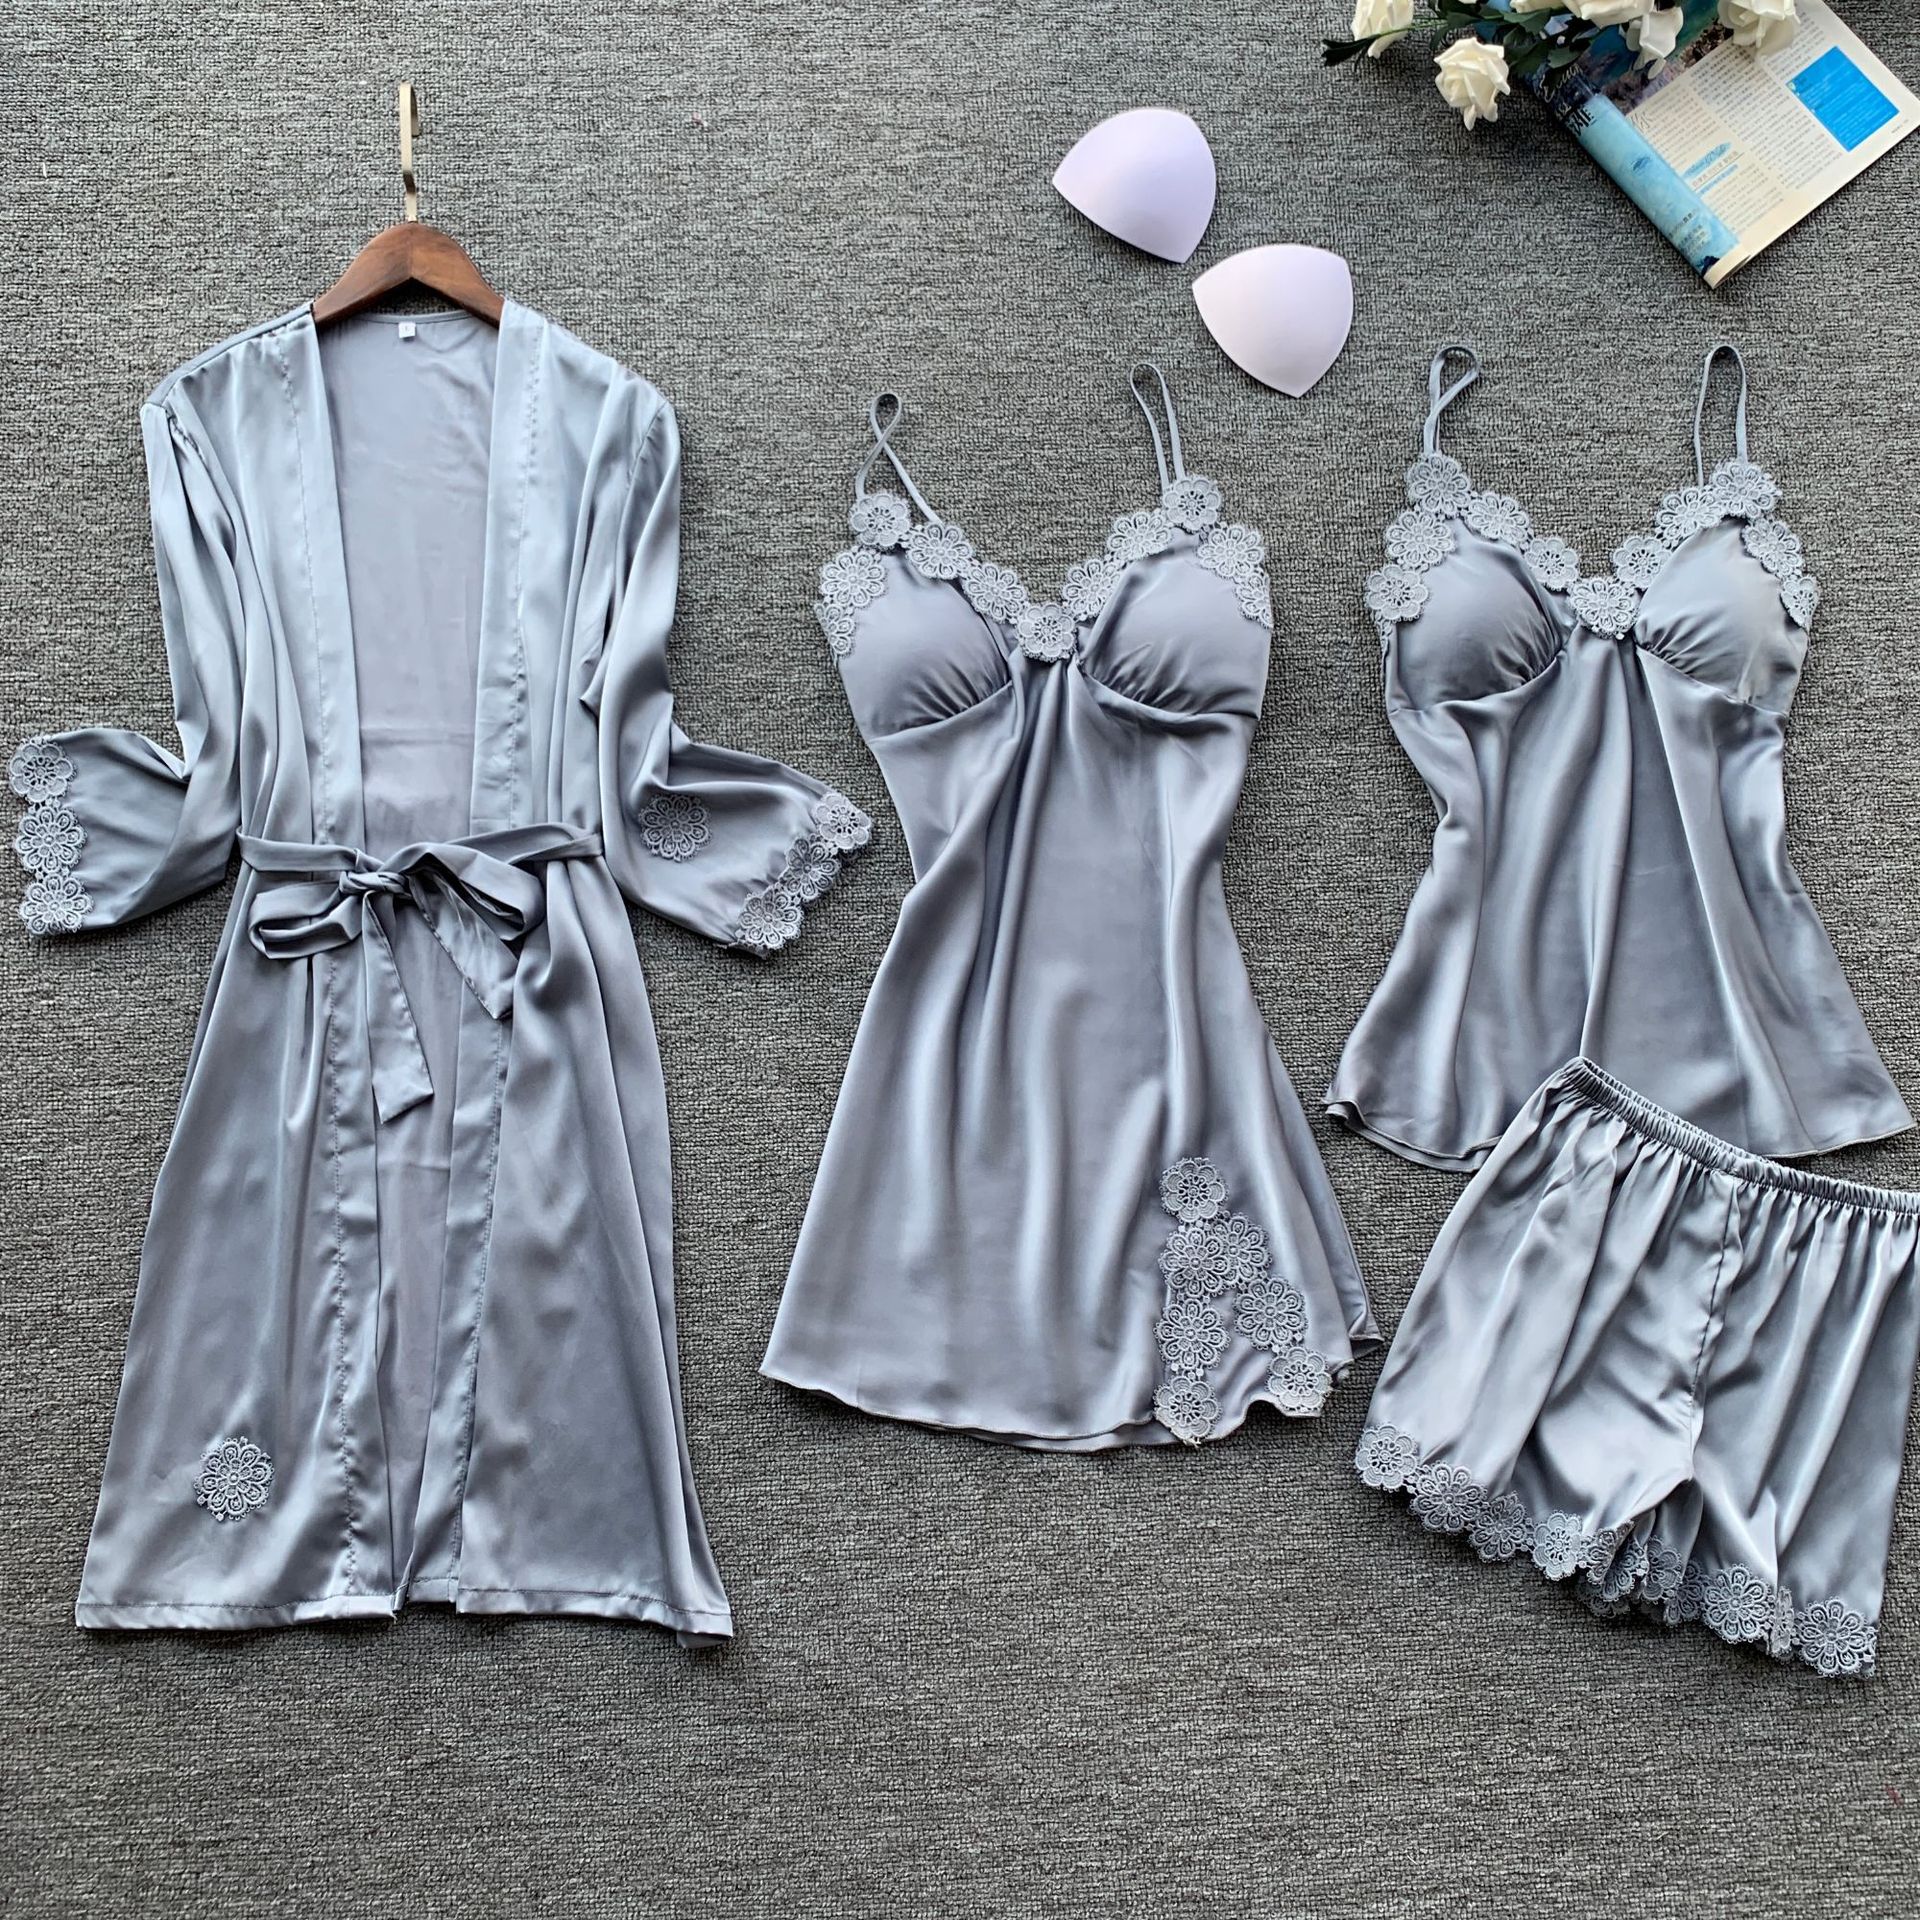 Lace Wedding Sleepwear Lingerie Set for Women